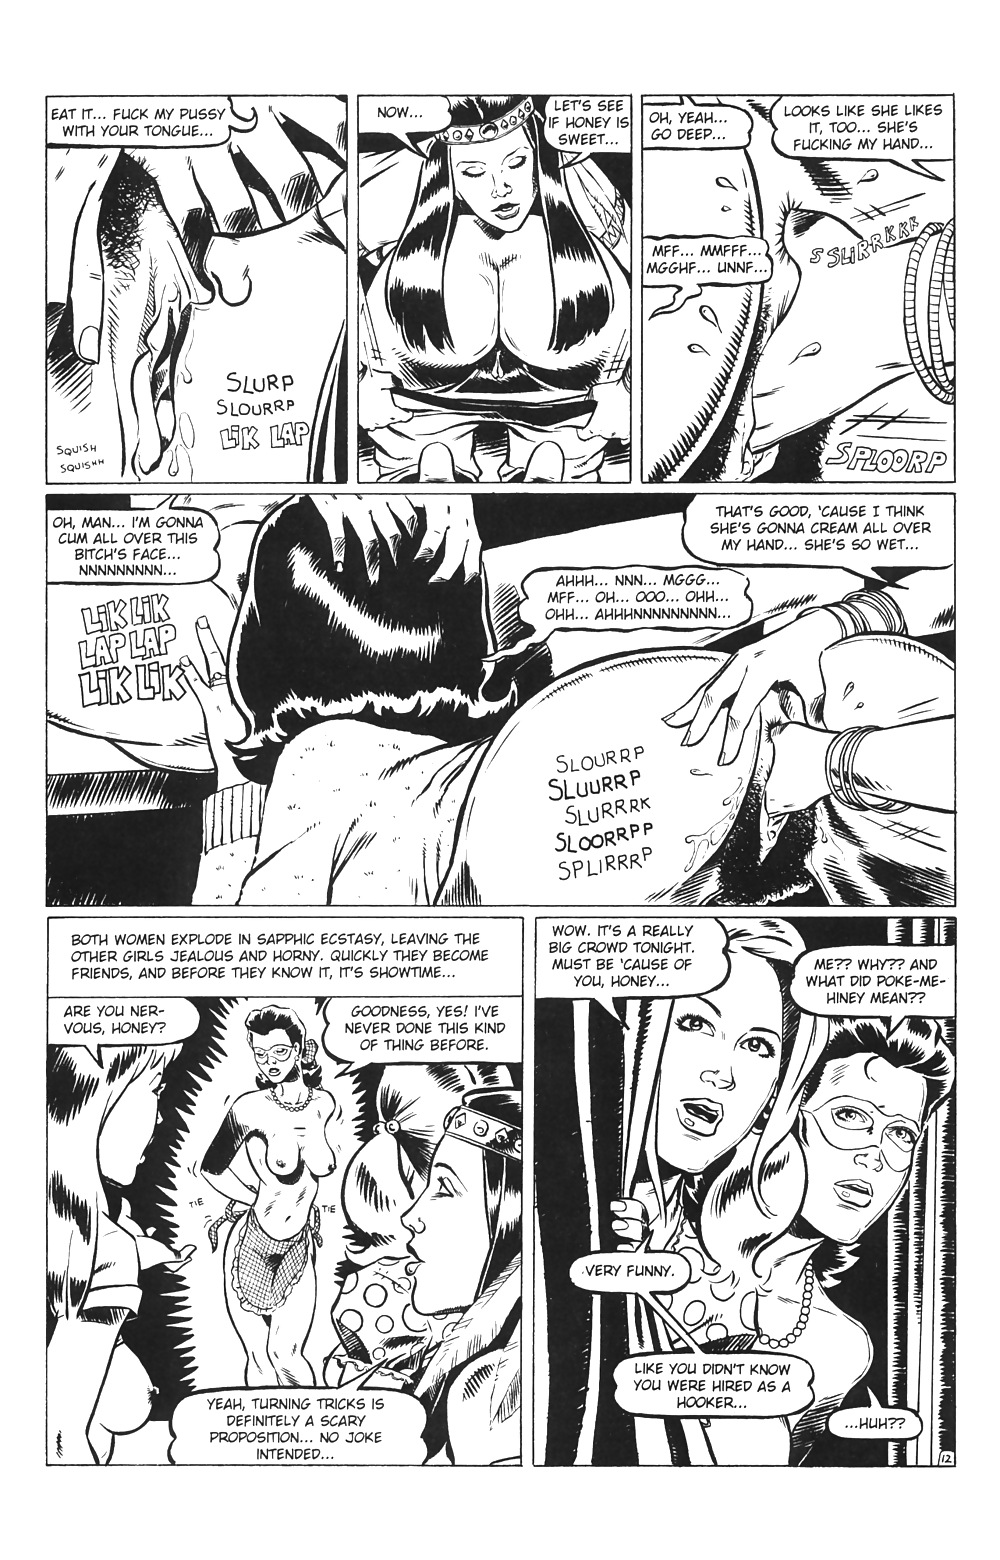 Hausfrauen Am Spiel # 03 - Eros-Comics Von Rebecca - Oktober 2001 #25713999